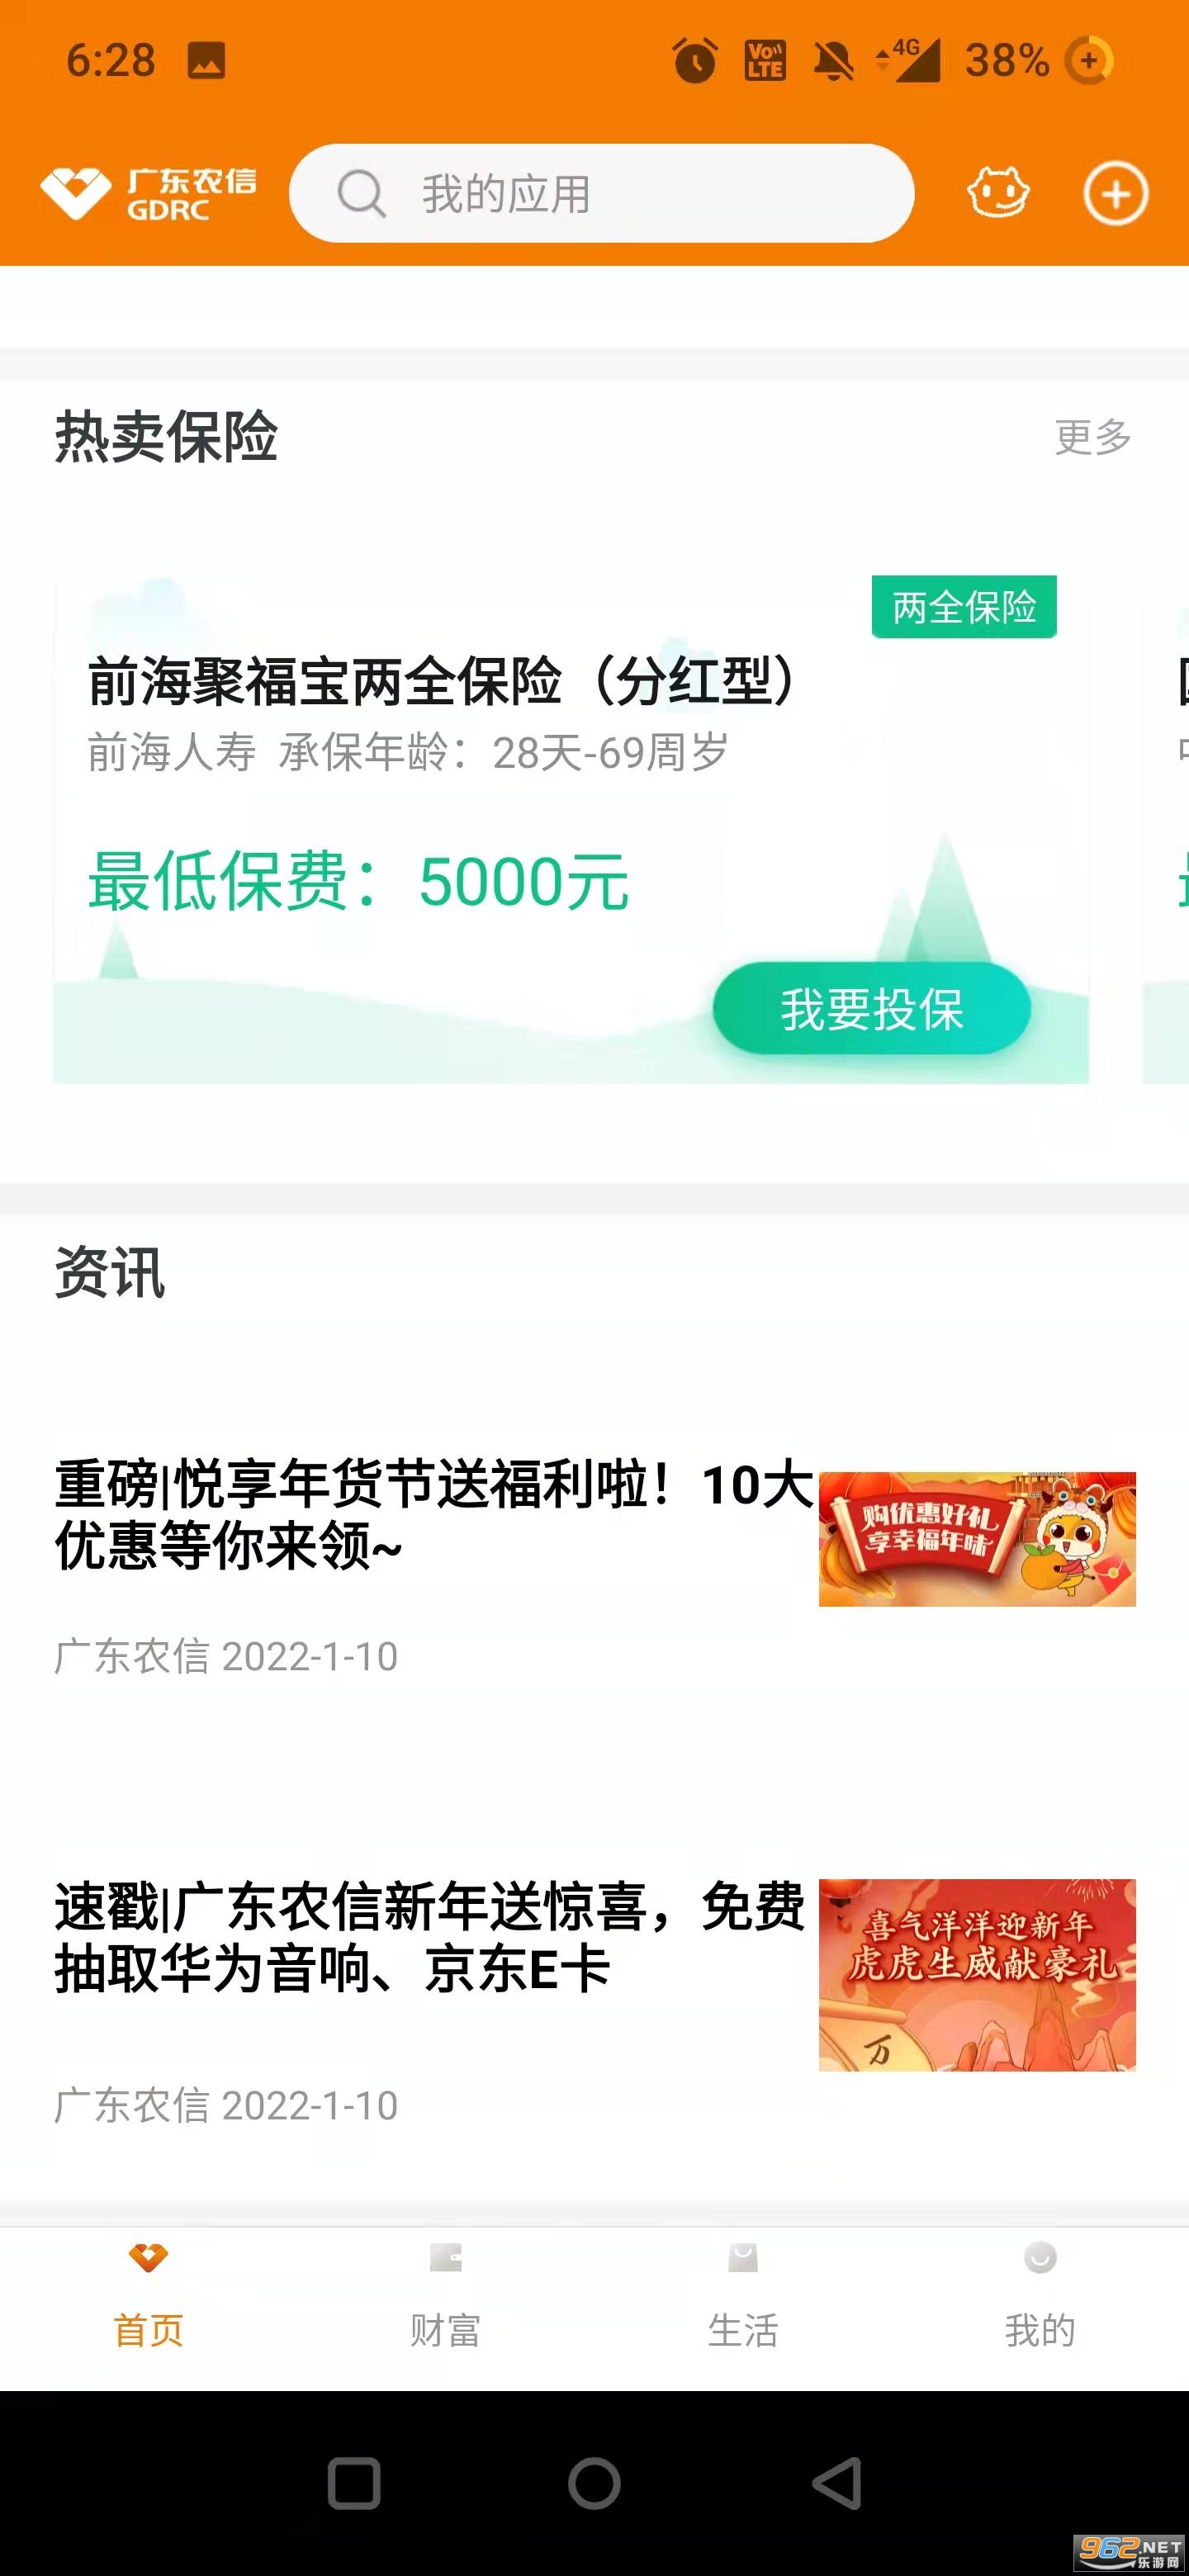 广东农信手机银行新版app v4.1.8最新版本